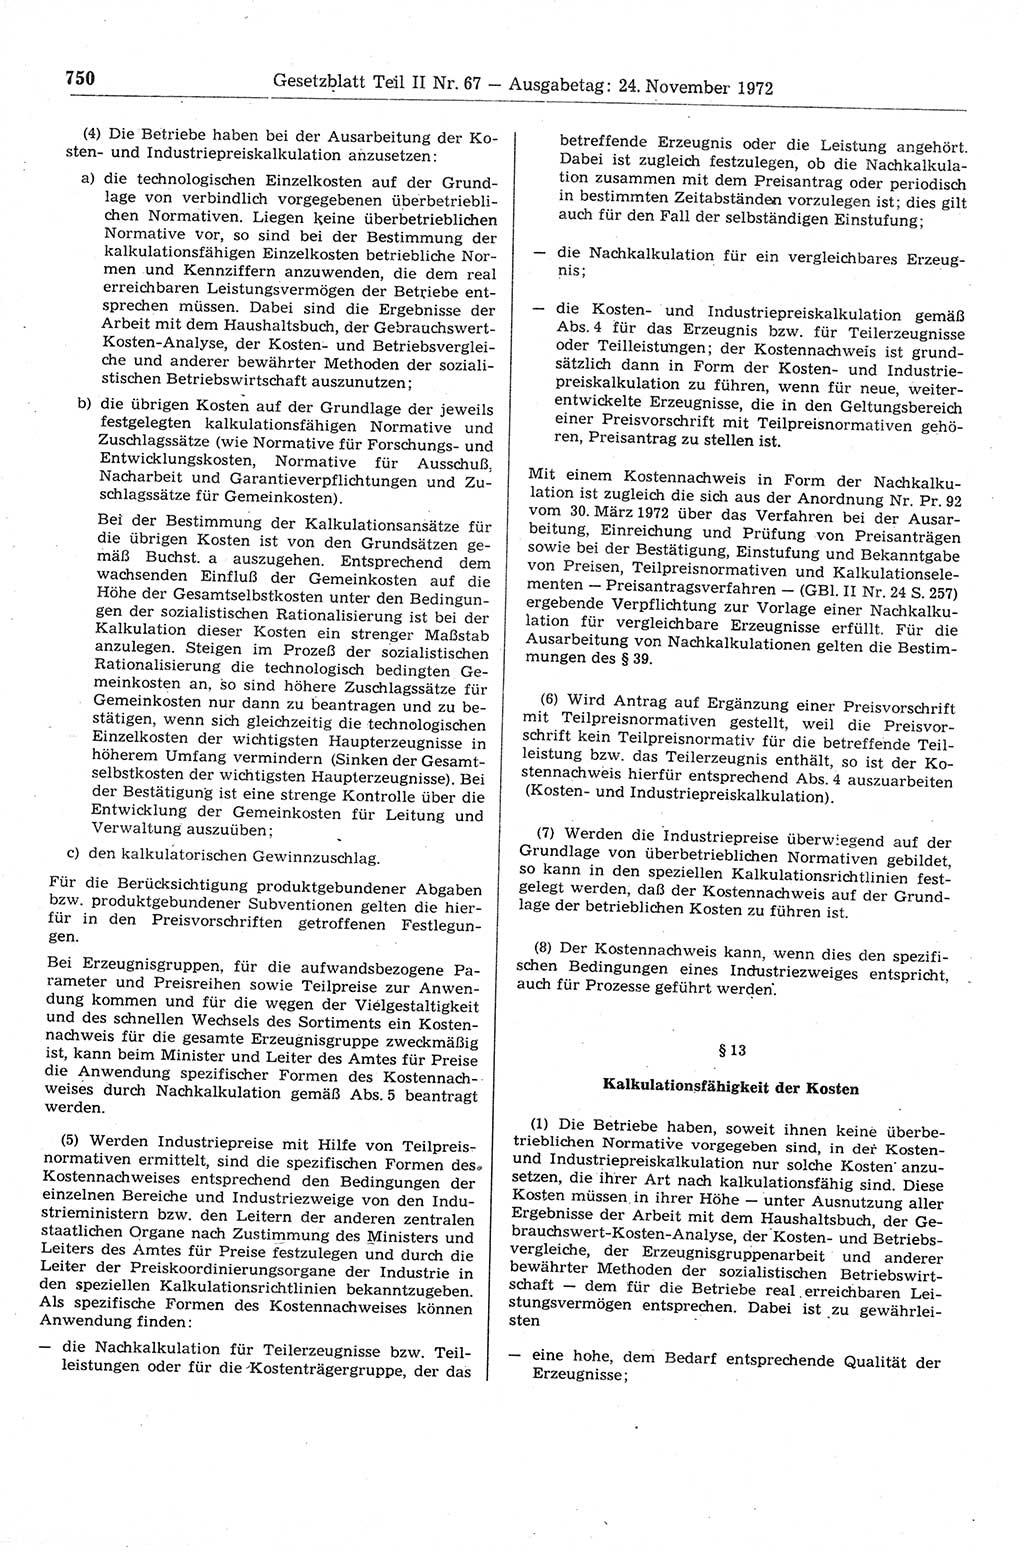 Gesetzblatt (GBl.) der Deutschen Demokratischen Republik (DDR) Teil ⅠⅠ 1972, Seite 750 (GBl. DDR ⅠⅠ 1972, S. 750)